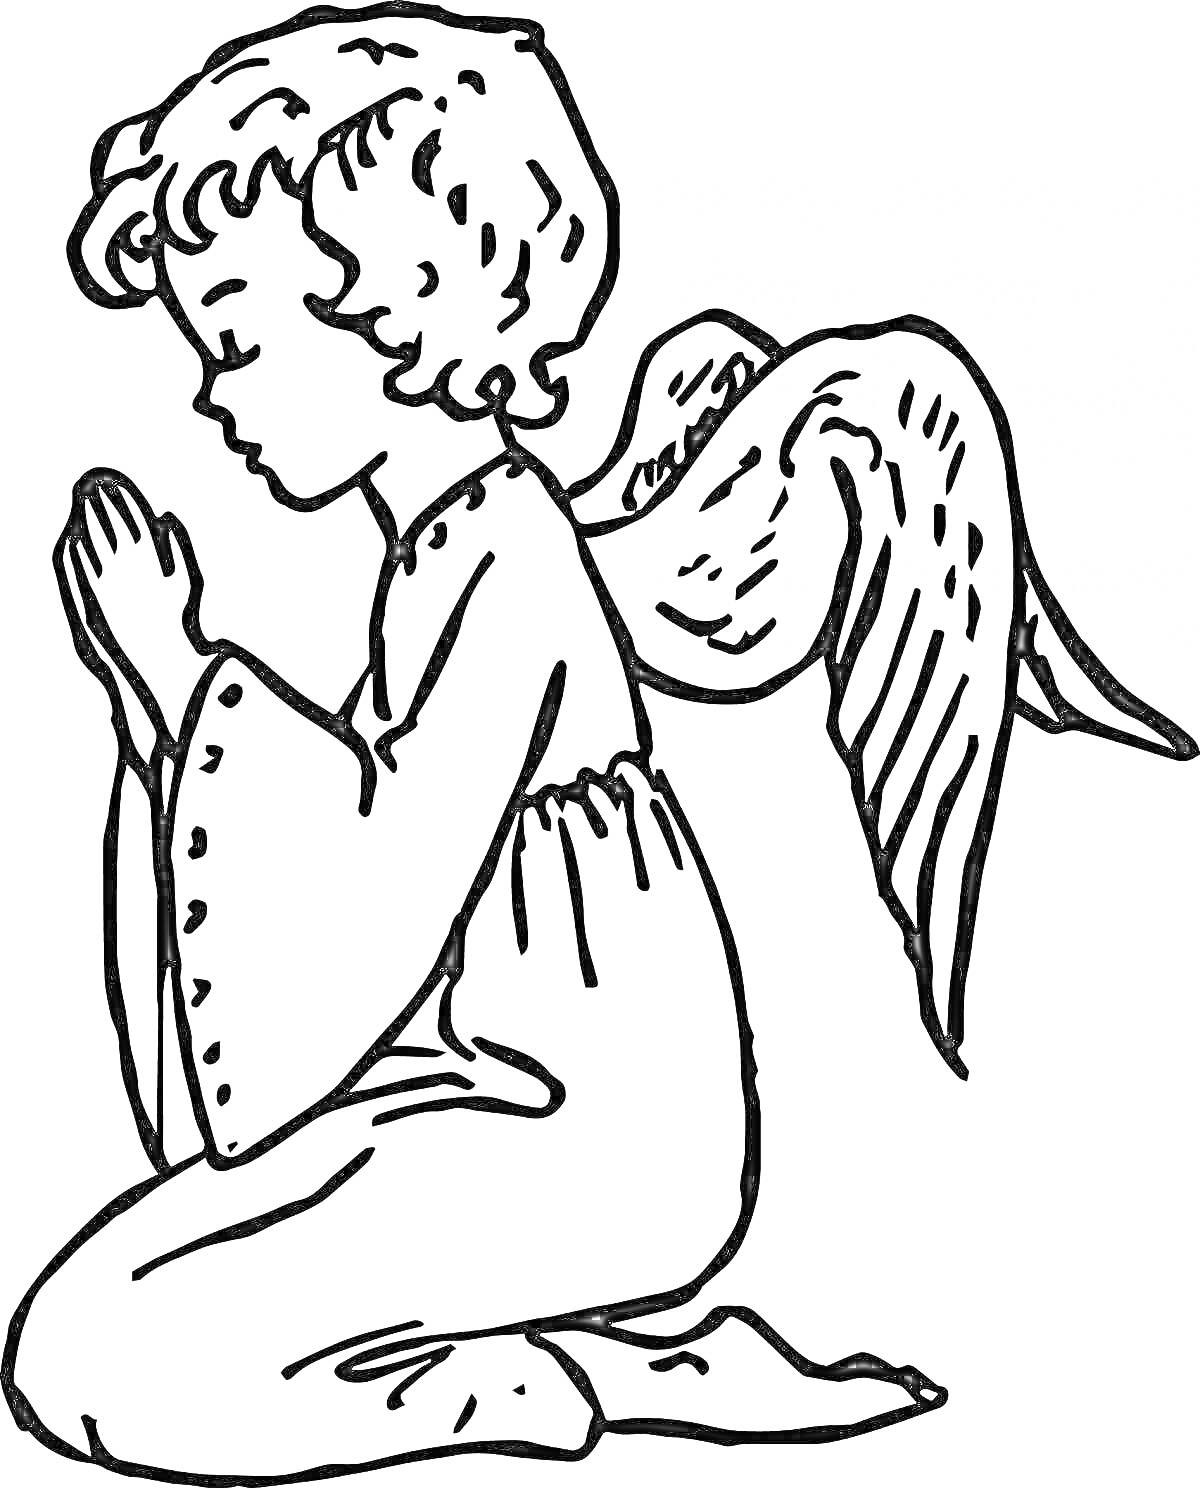 Раскраска Малыш-ангел на коленях со сложенными в молитве руками